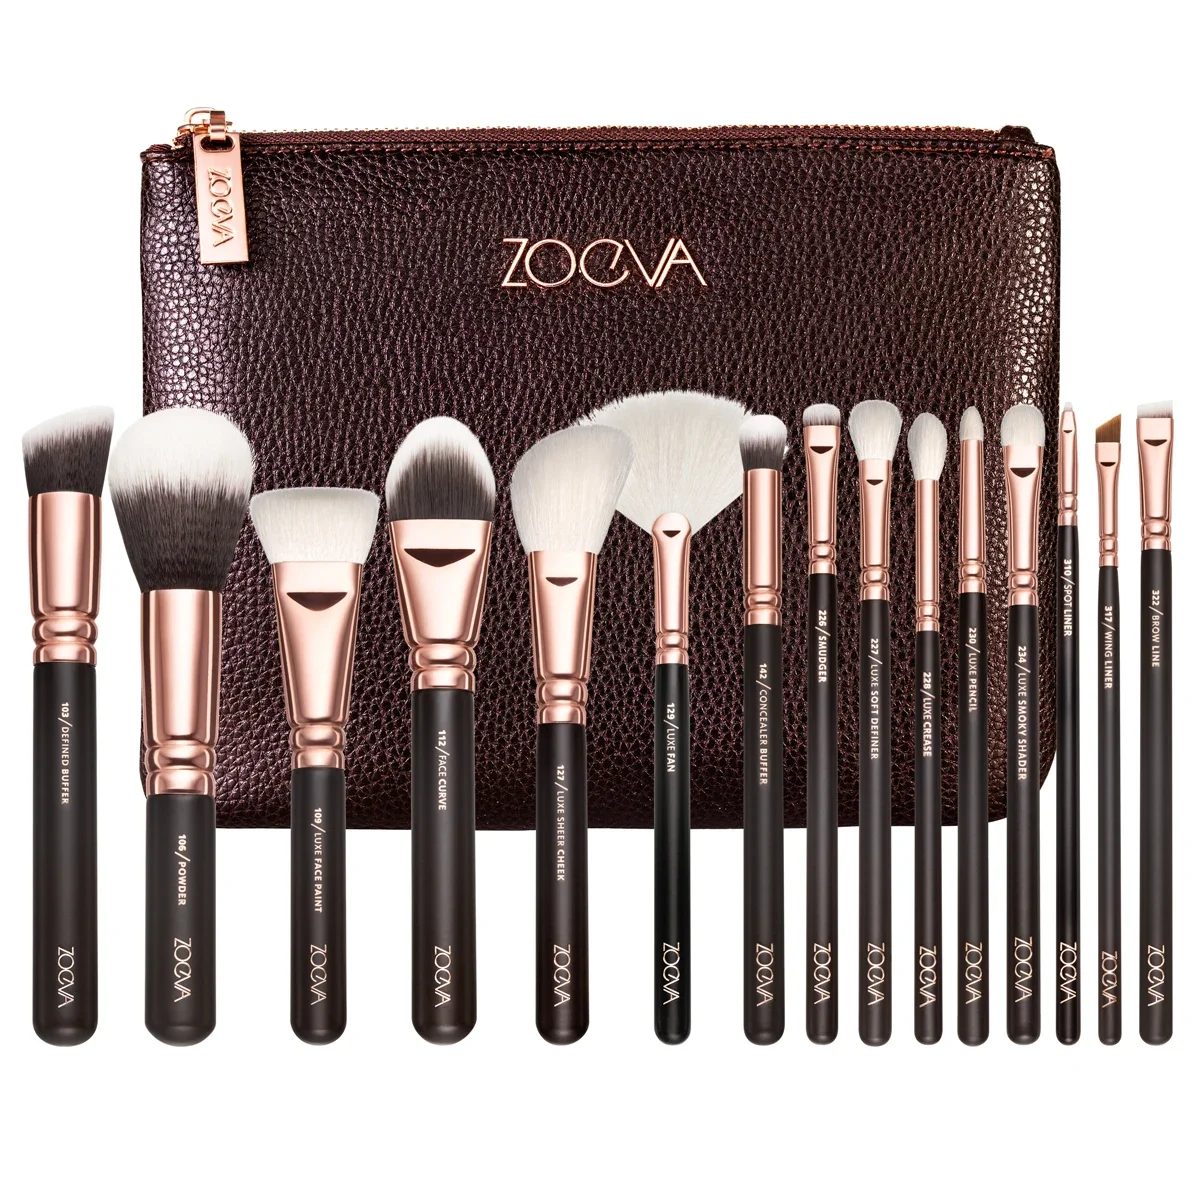 Zoeva 15 Brown/Black Makeup Brushes Face Powder Blush Eye Shadow Eyebrow Brush Highlight Makeup Brush Set